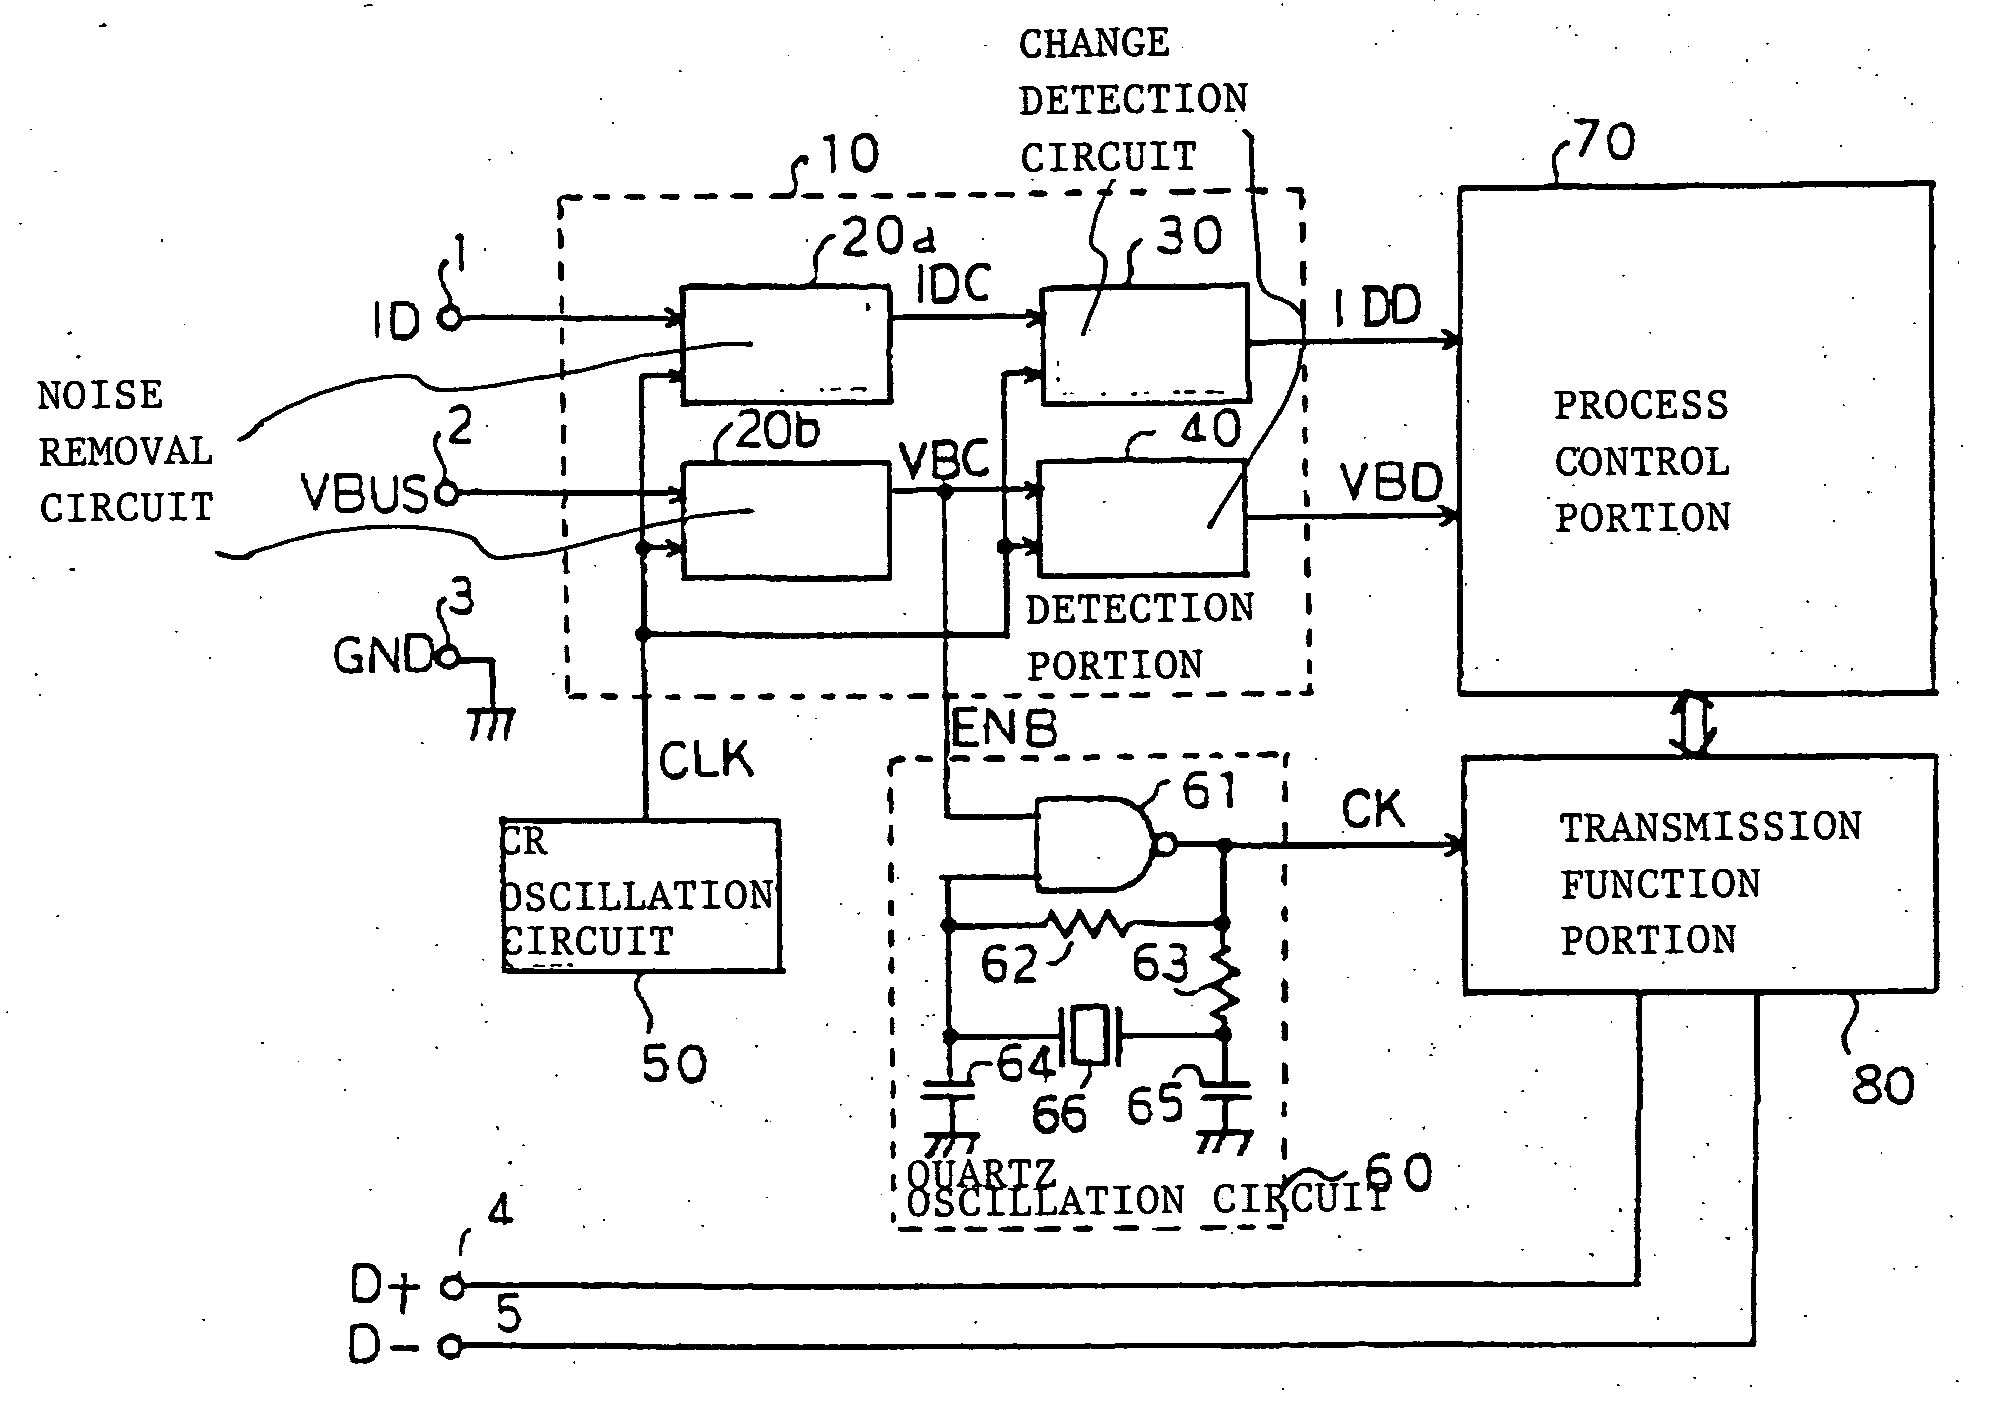 Interfact circuit